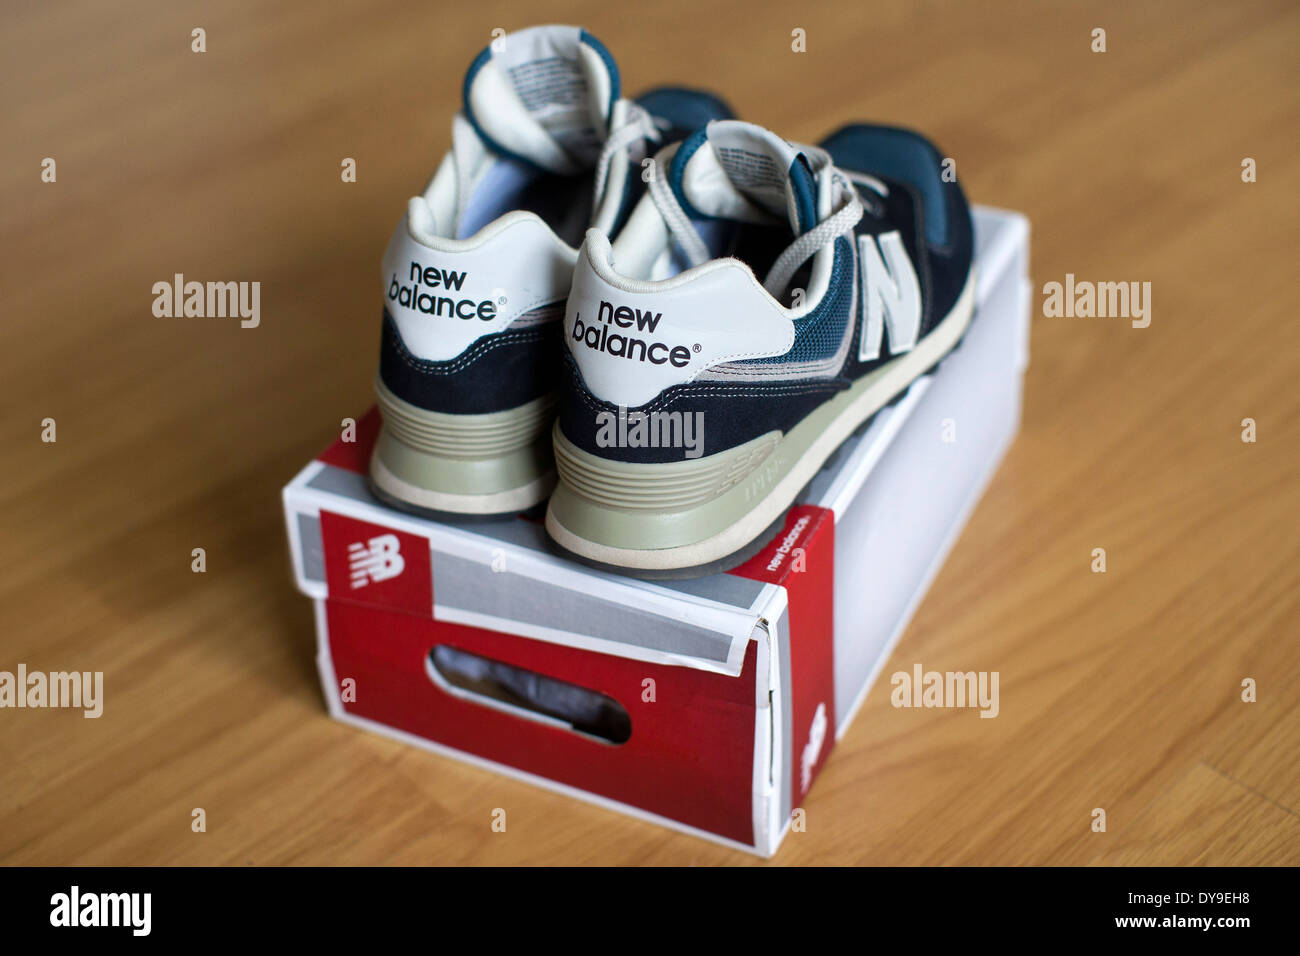 UK, Londres : une photo montre une paire de chaussures New Balance sur une boîte à chaussures. Banque D'Images